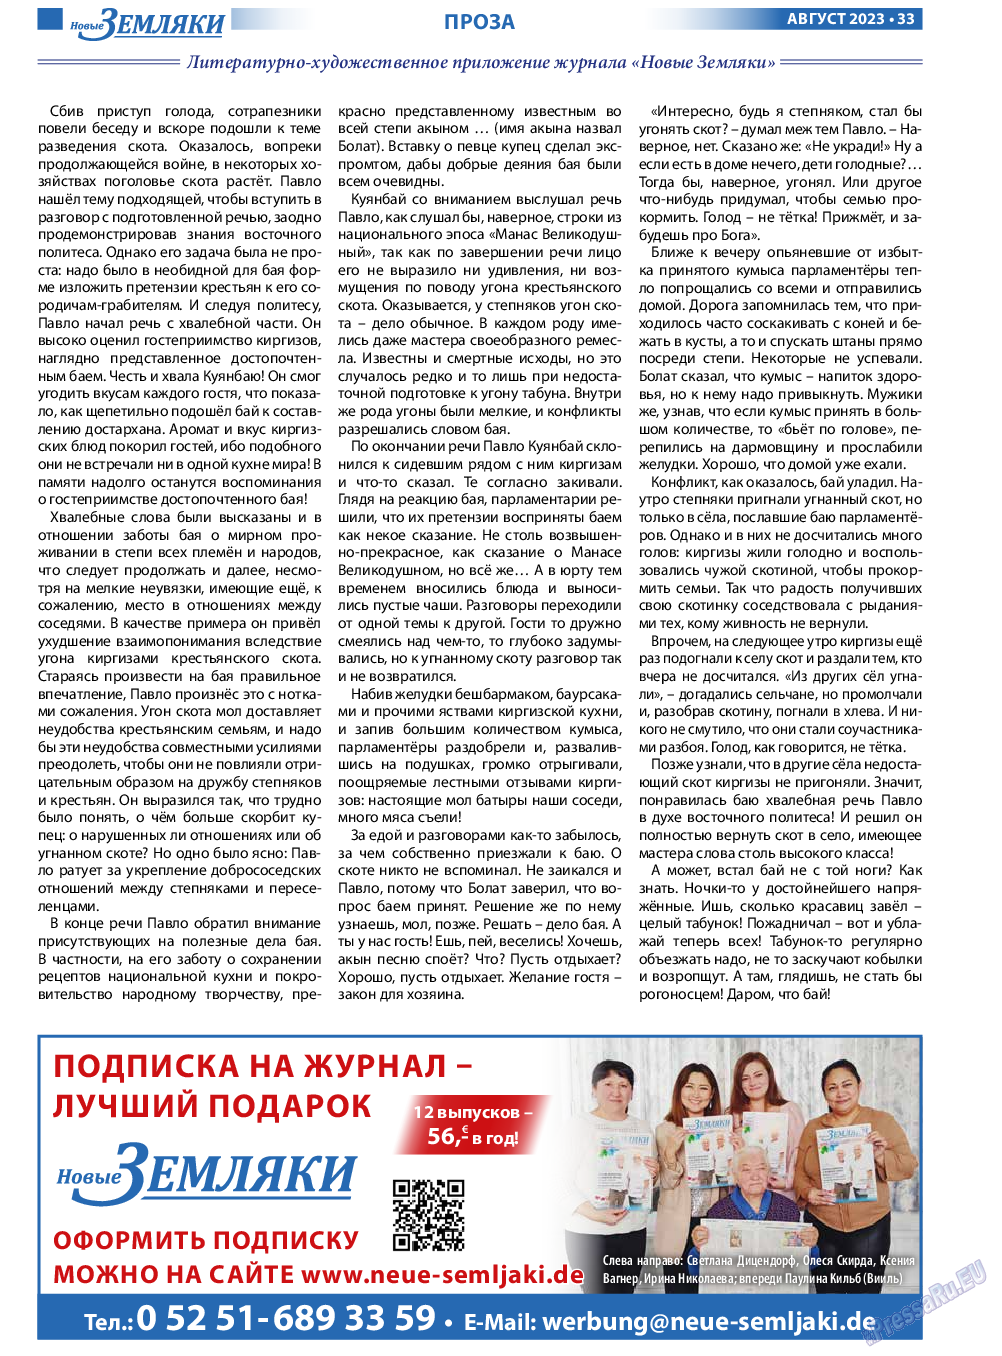 Новые Земляки, газета. 2023 №8 стр.33